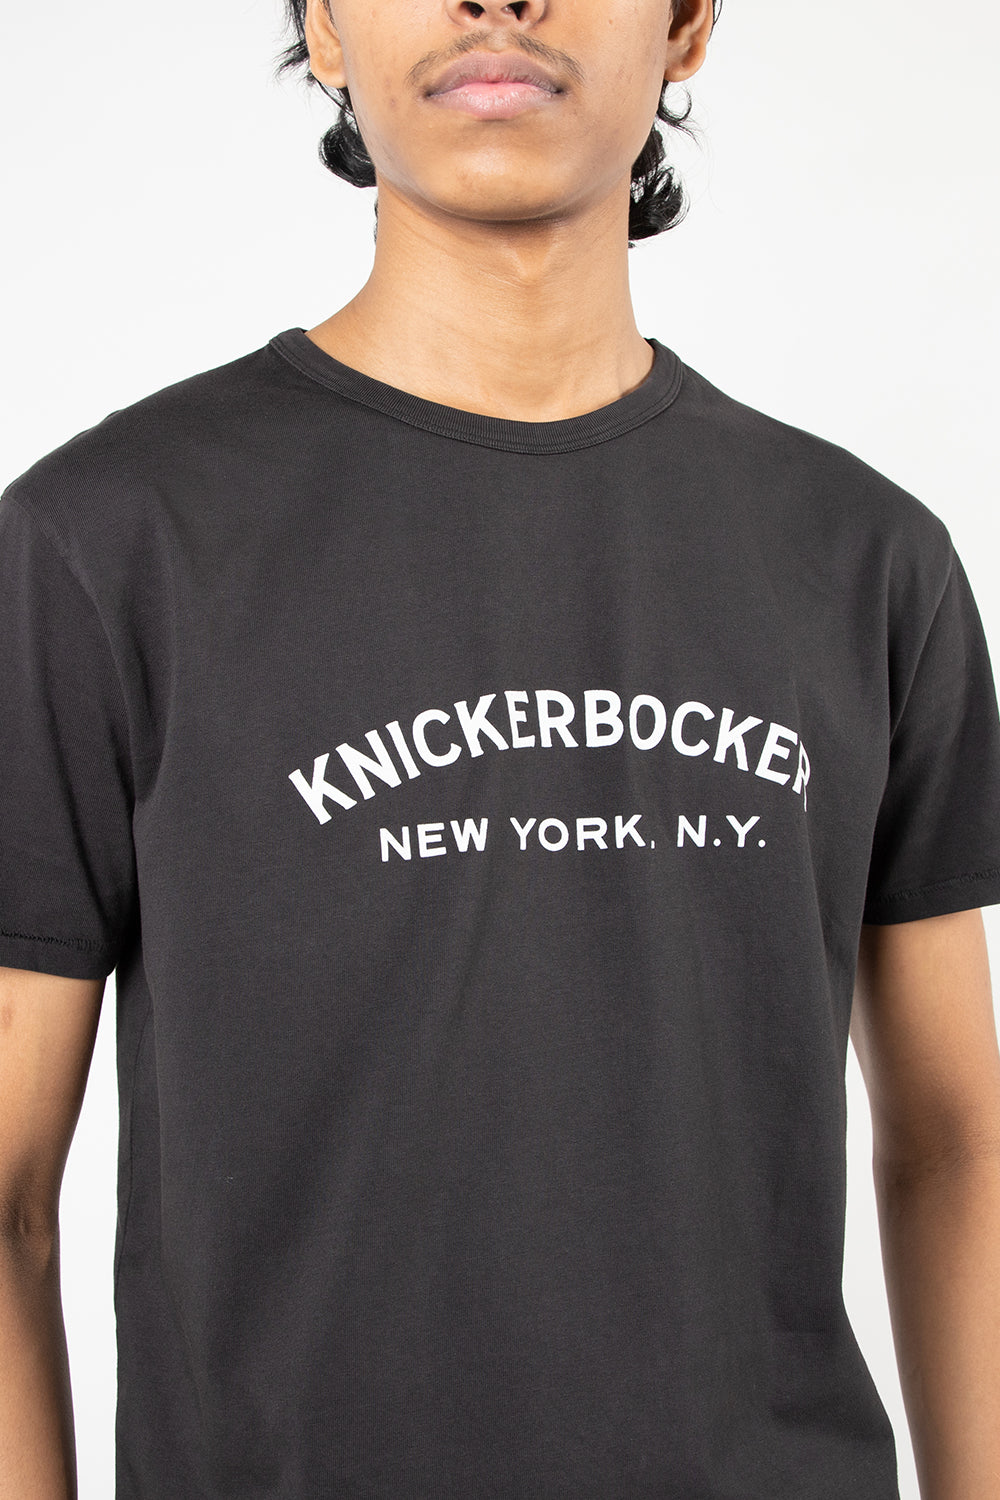 knickerbocker core tee logo coal 